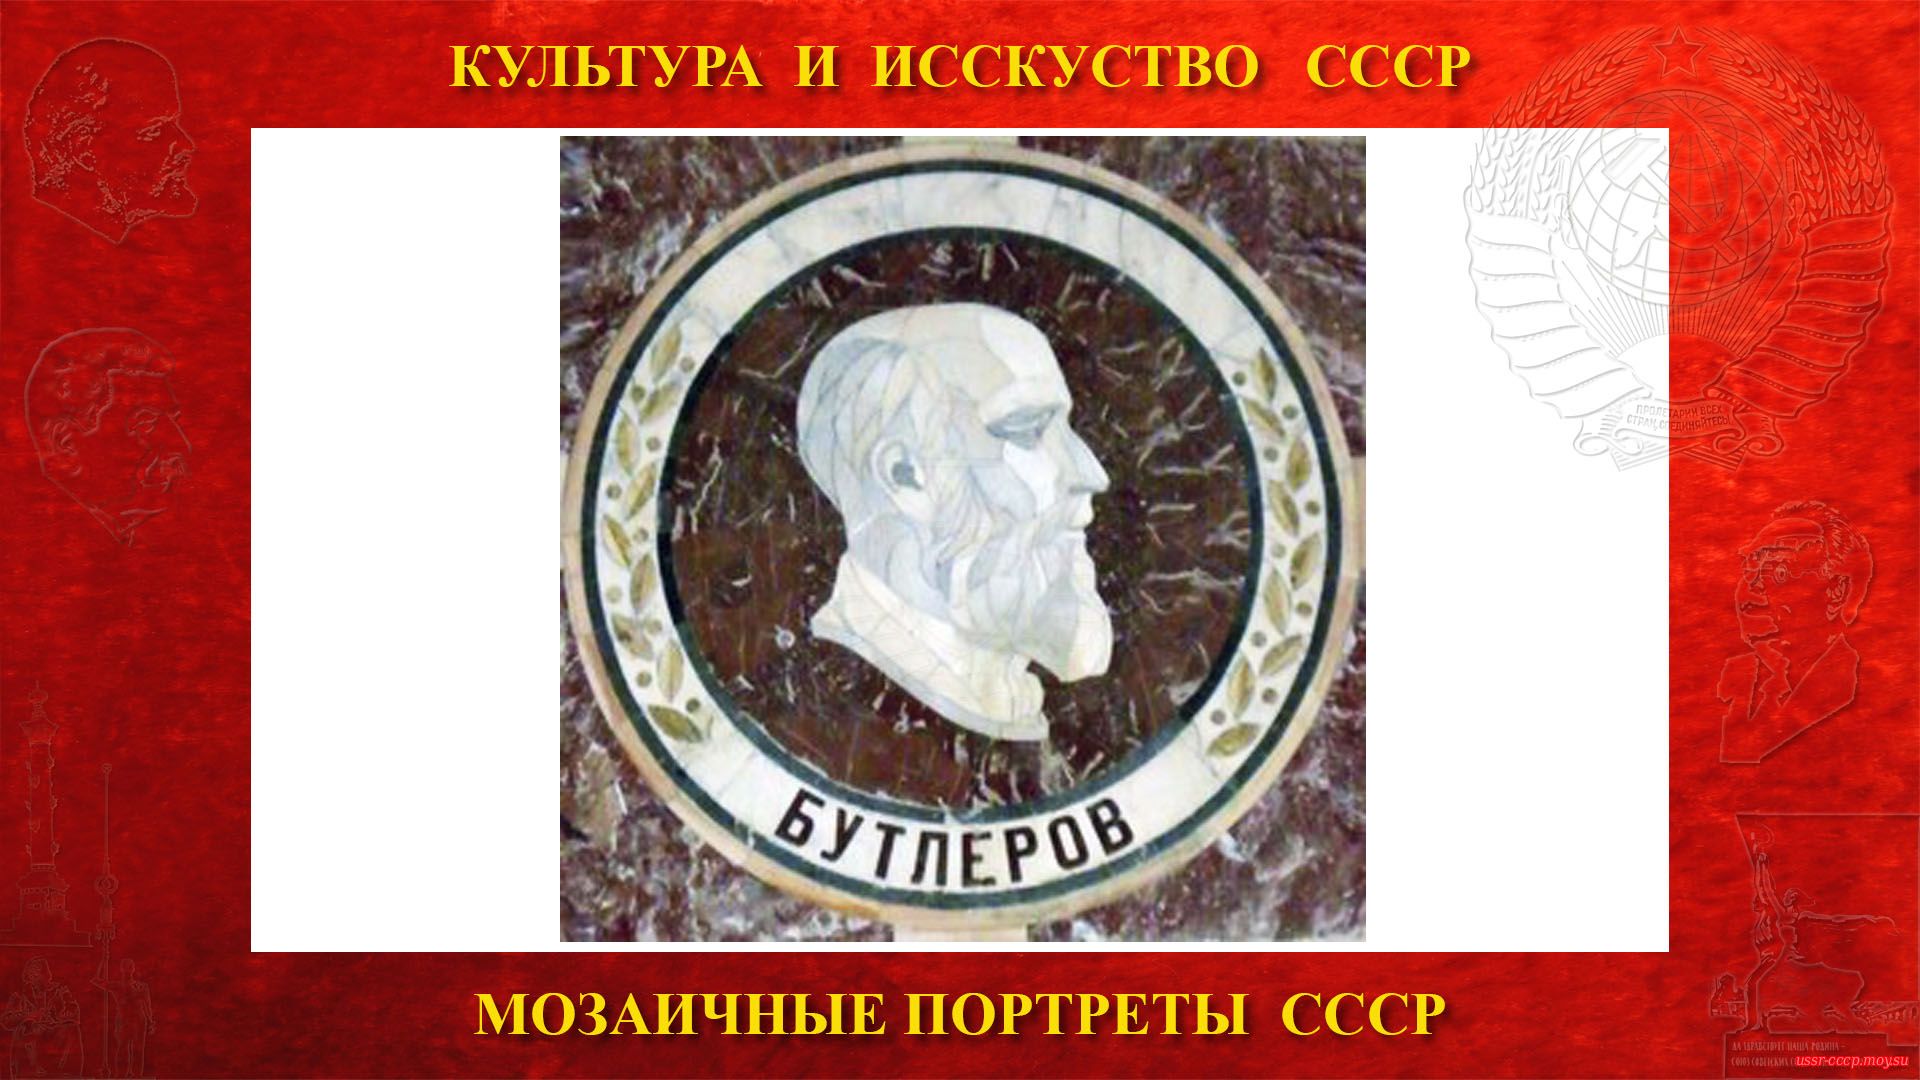 Мозаичный портрет Бутлерову А.М. на Ленинских горах в ГЗ МГУ (Москва 1953) (повествование)